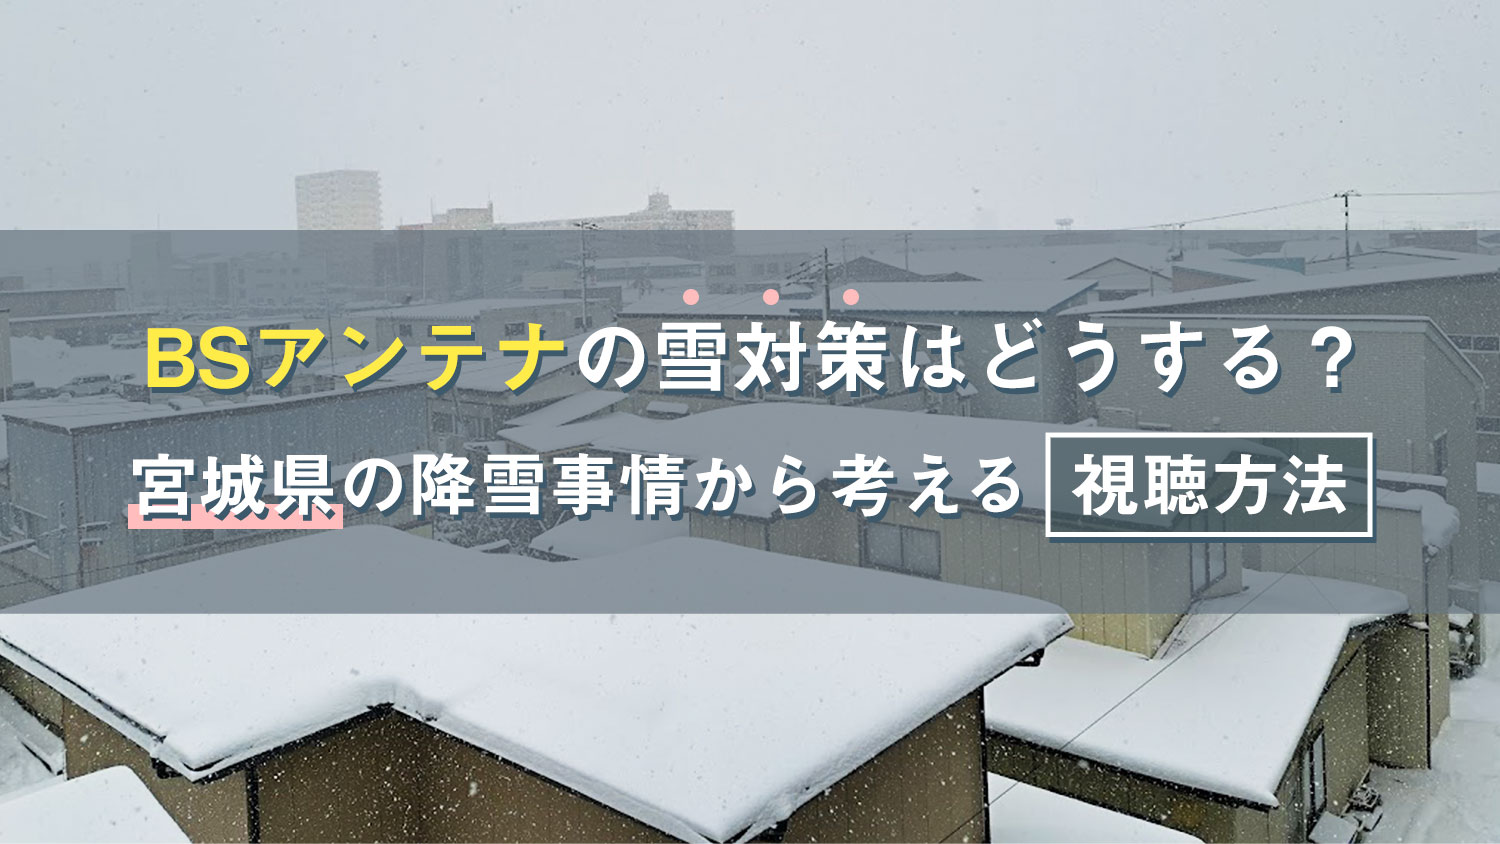 BSアンテナの雪対策はどうする？宮城県の降雪事情から考える視聴方法